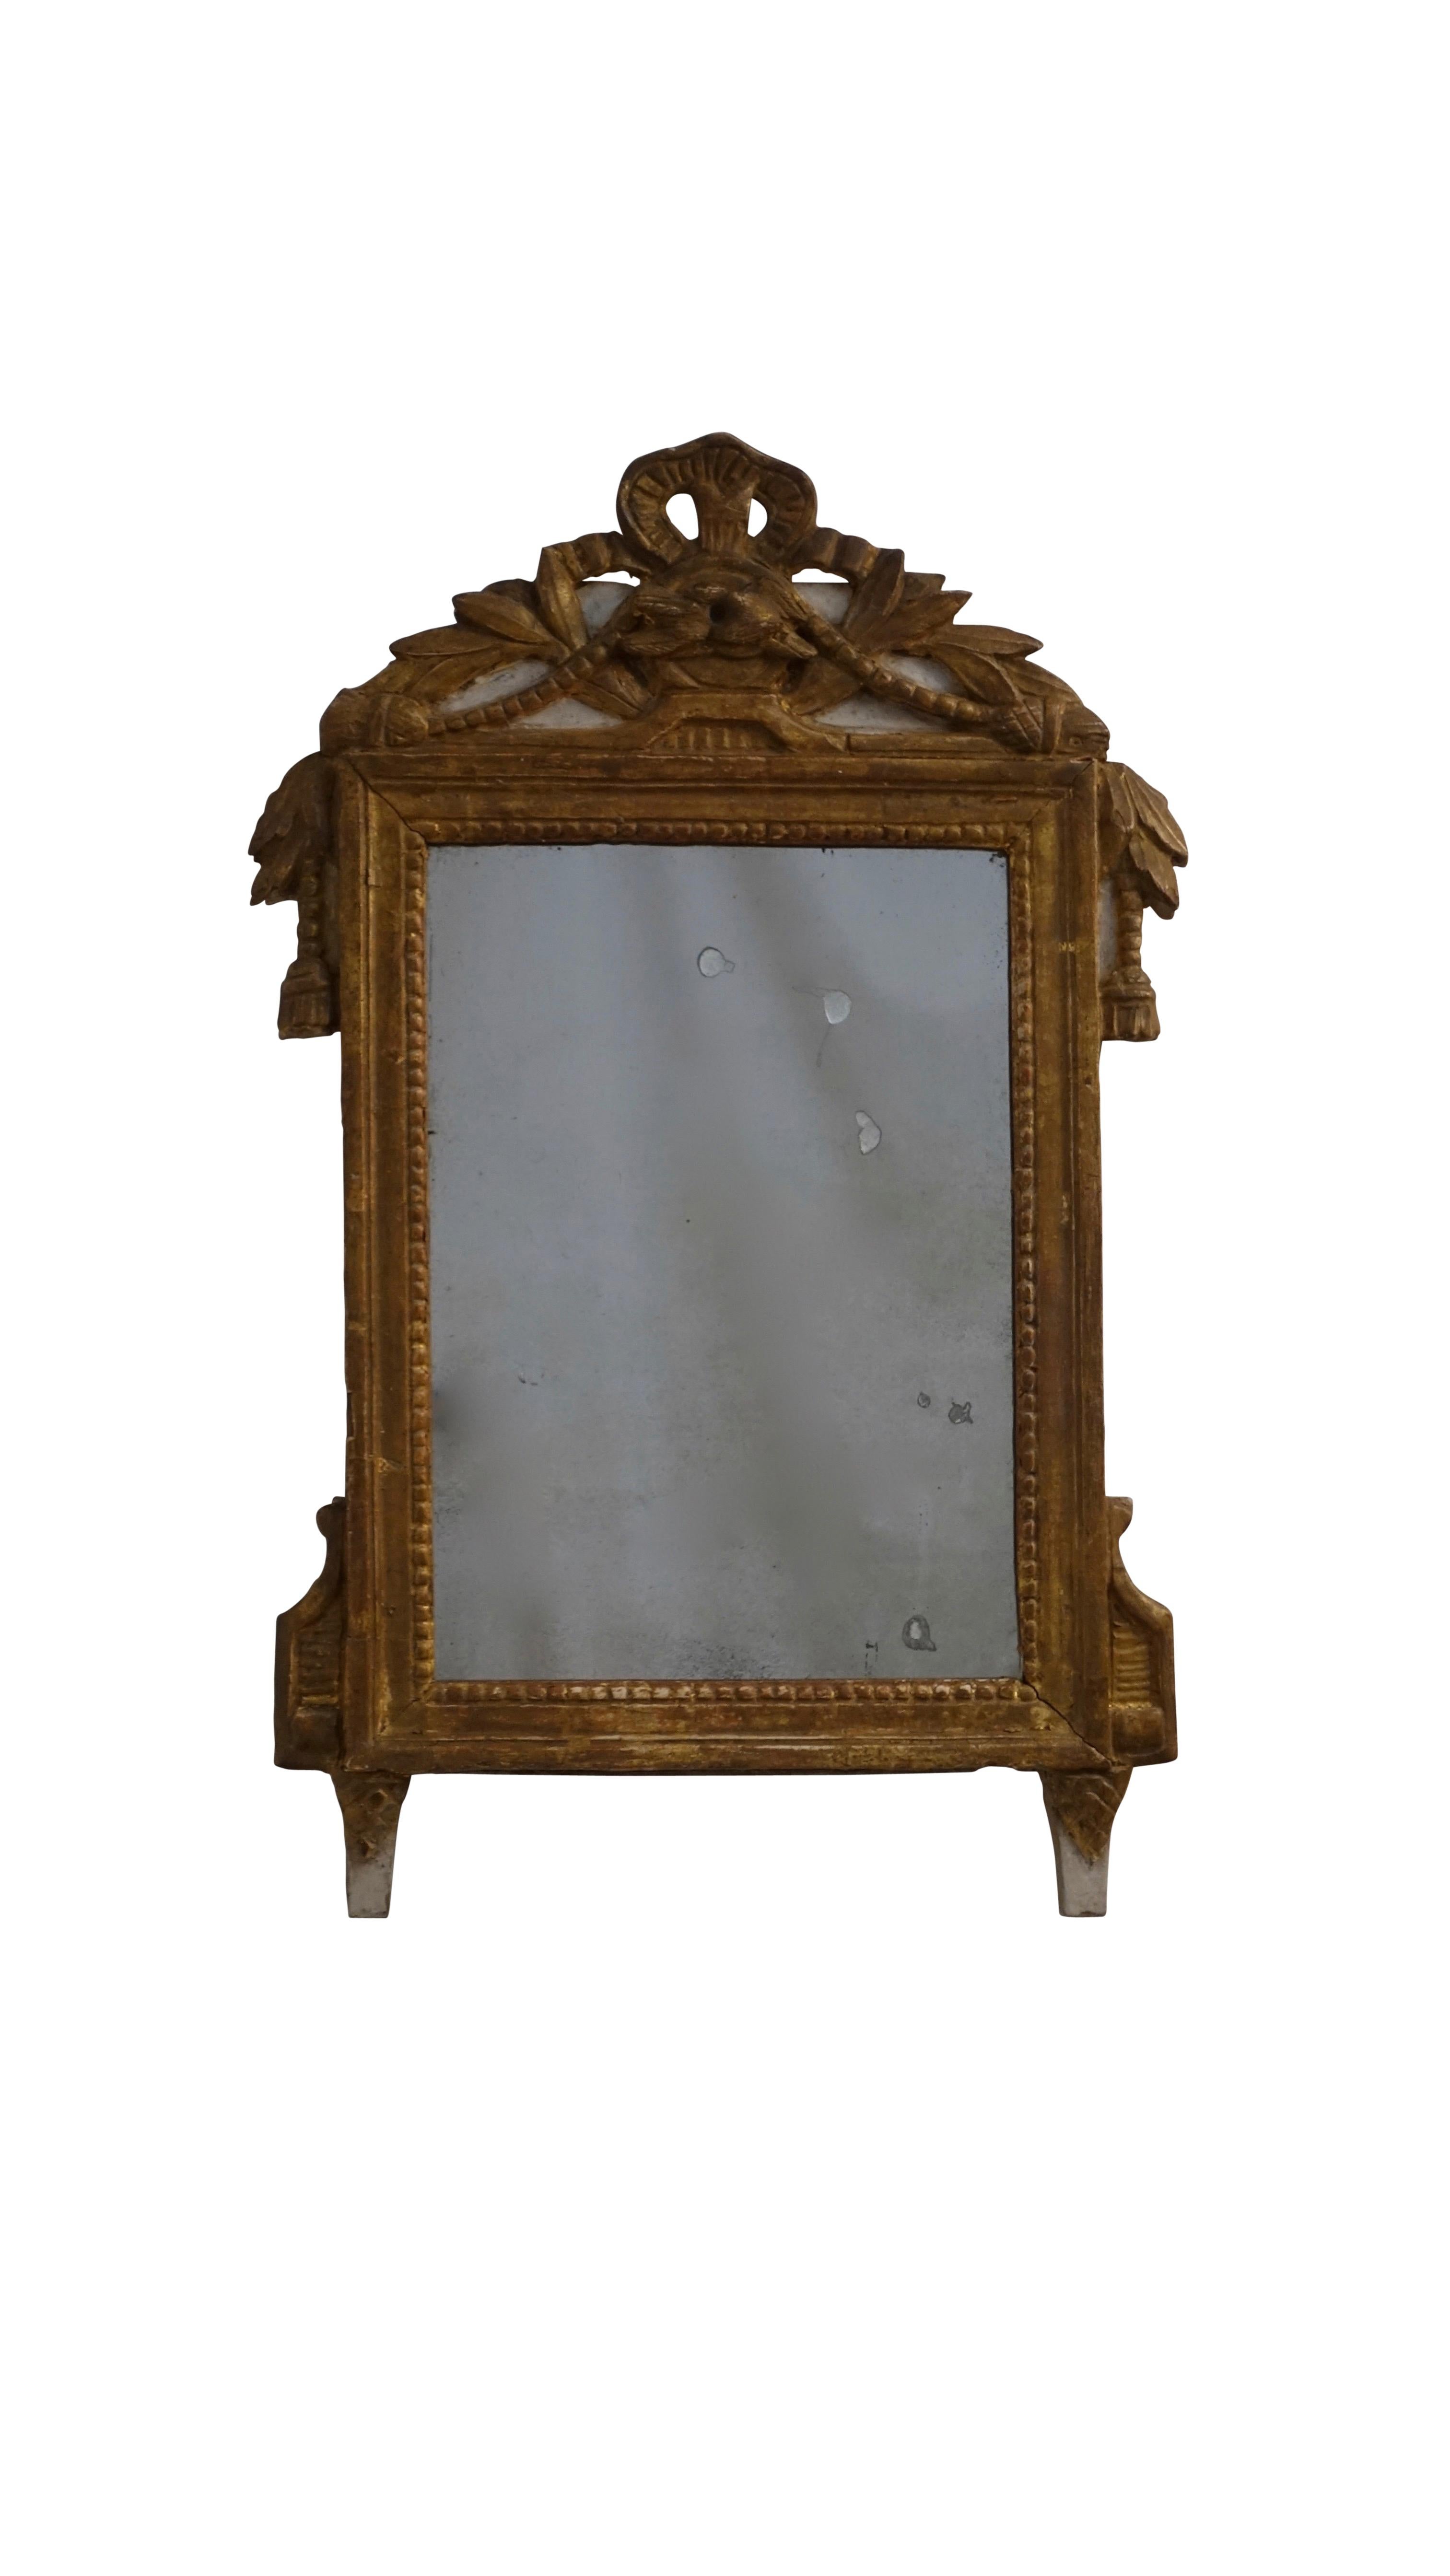 Miroir de boudoir Louis XV sculpté et doré à la main avec une peinture grise parcellaire. Le cartouche est orné d'un ruban noué au-dessus d'un couple d'oiseaux d'amour avec un cordon à glands et des feuilles de laurier. Le miroir d'origine présente